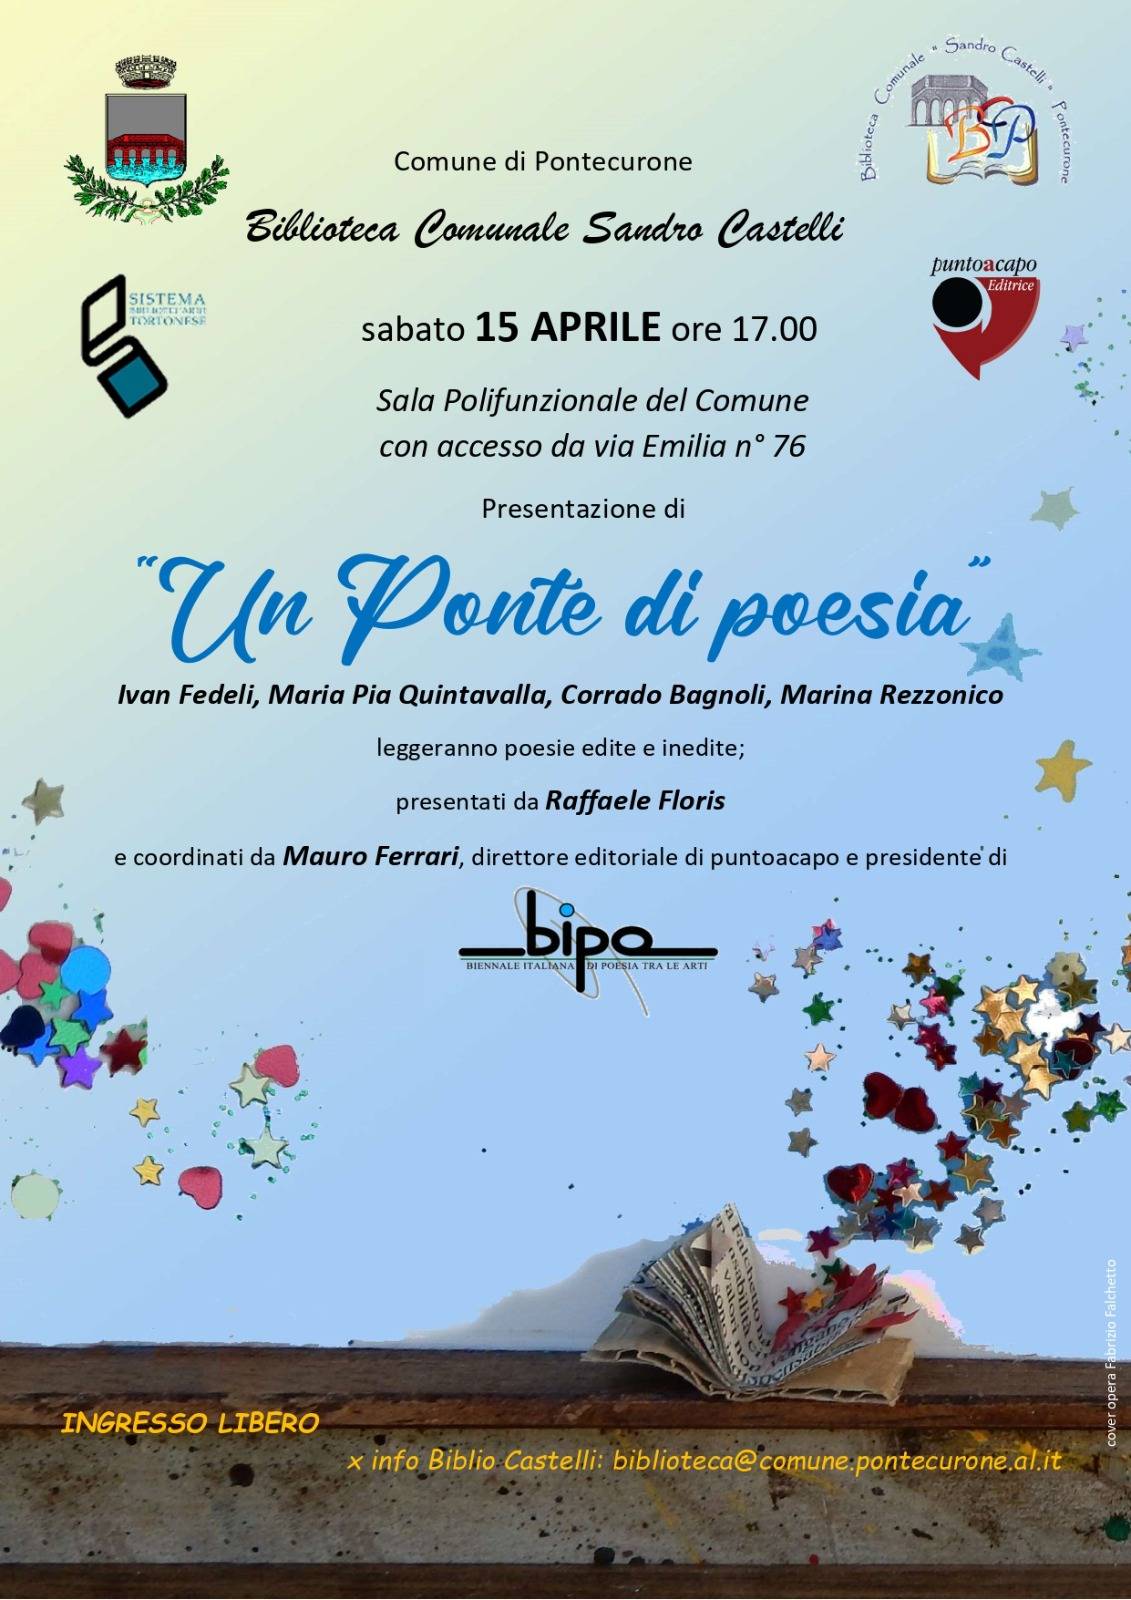 Un ponte di Poesia – Pontecurone (AL) – sabato 15 aprile ore 17:00 – Biblioteca Comunale Sandro Castelli